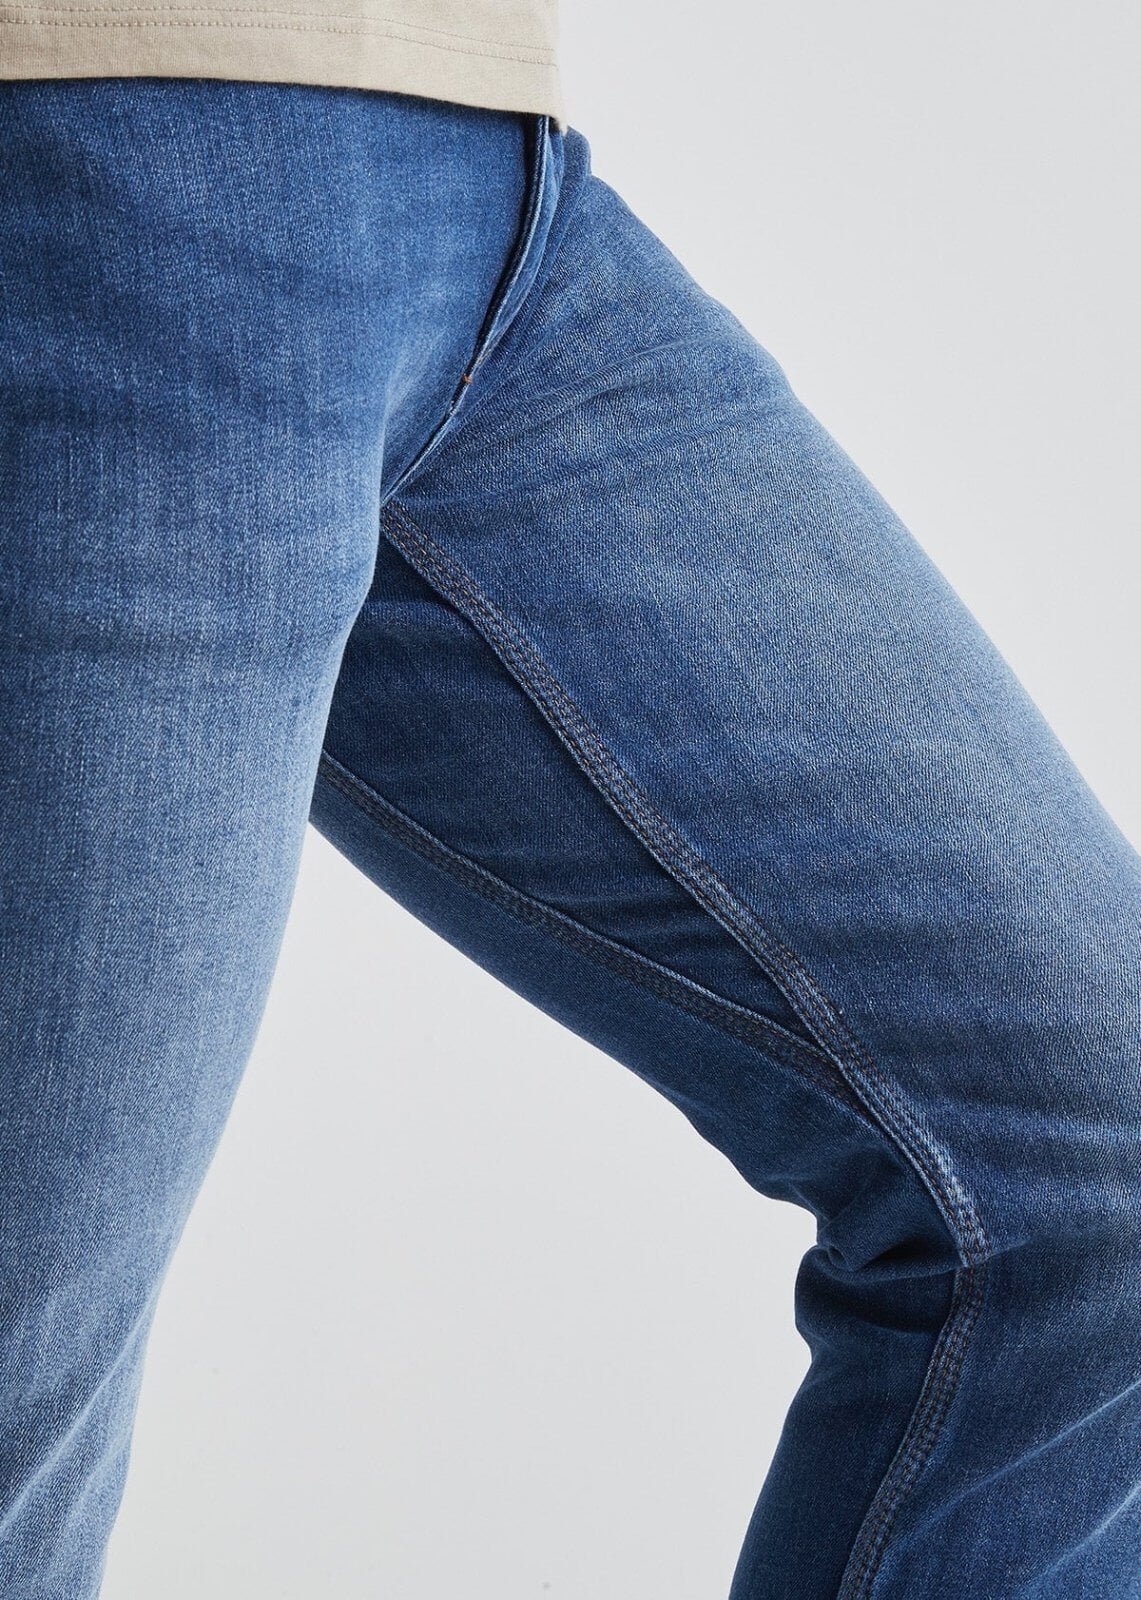 Men's Pink Slim Fit Stretch Jeans Destroyed Fold Denim Pants